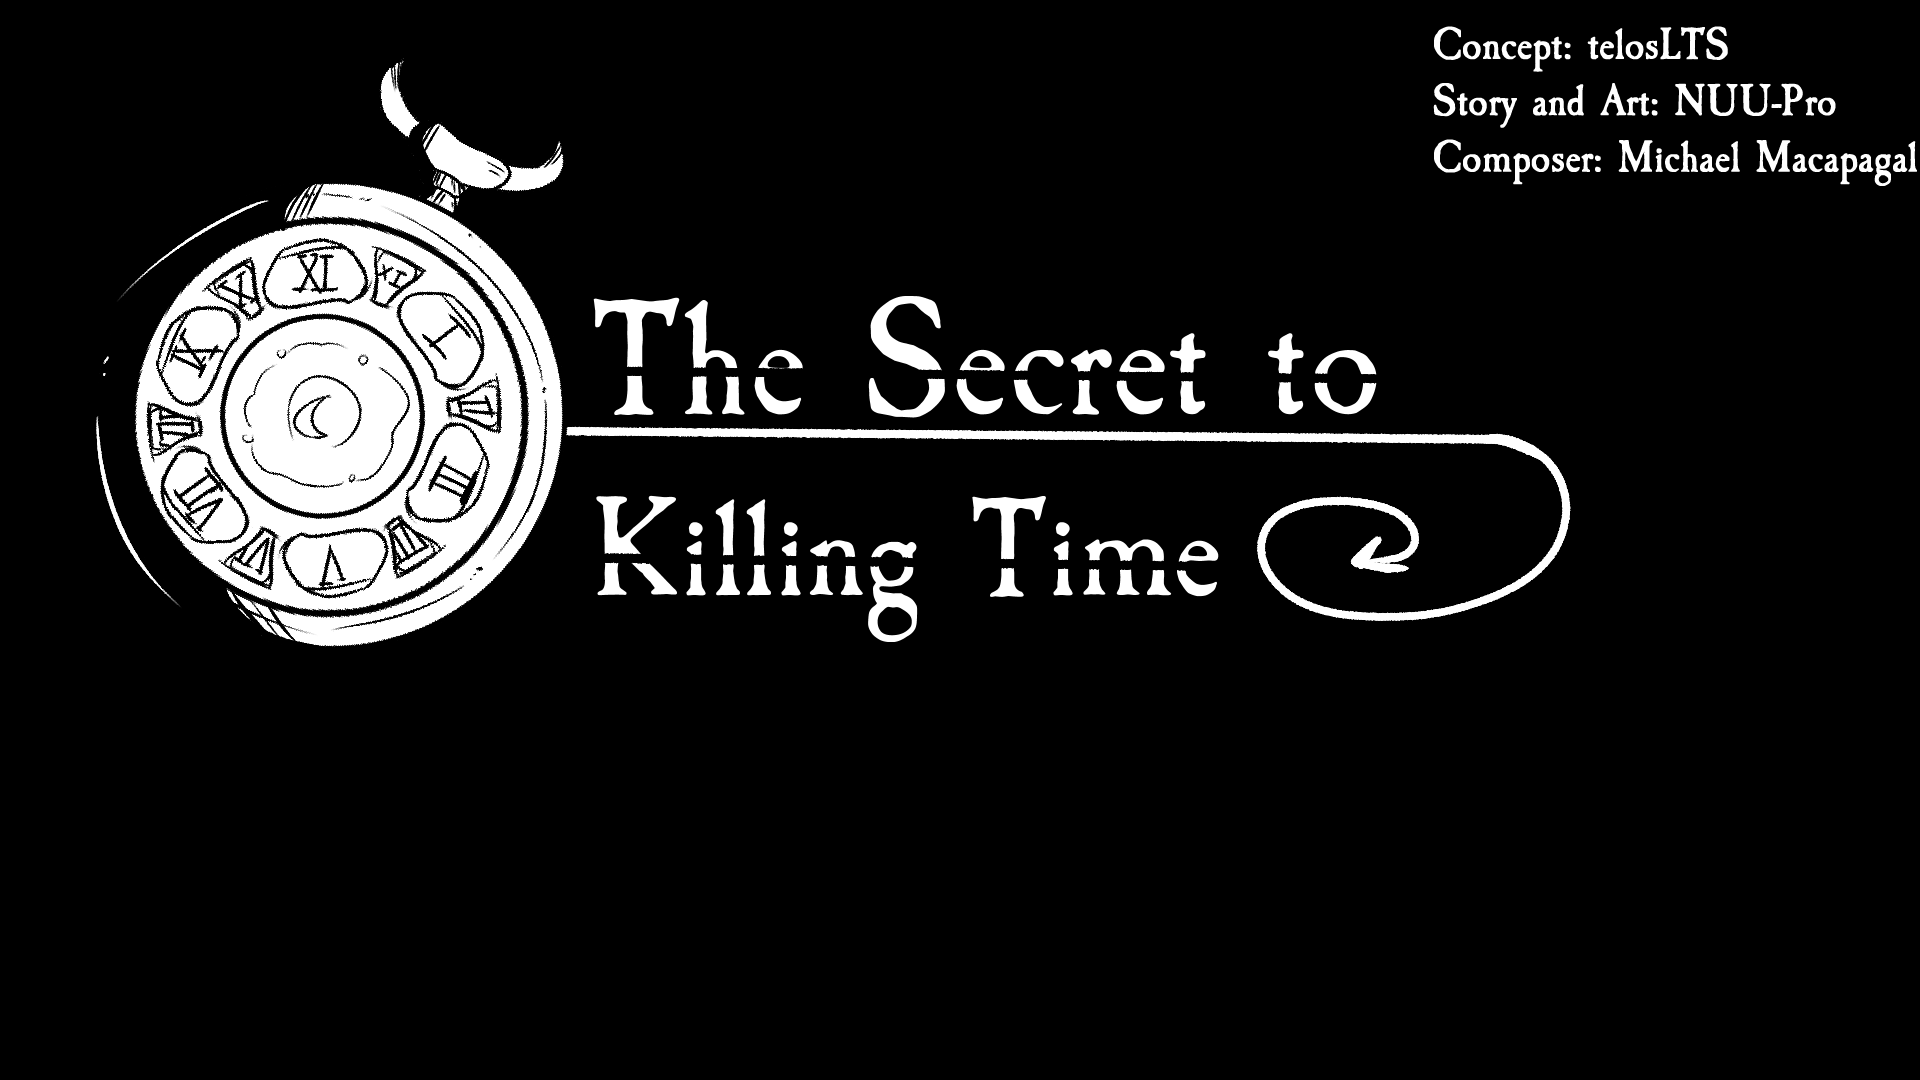 The Secret to Killing Time